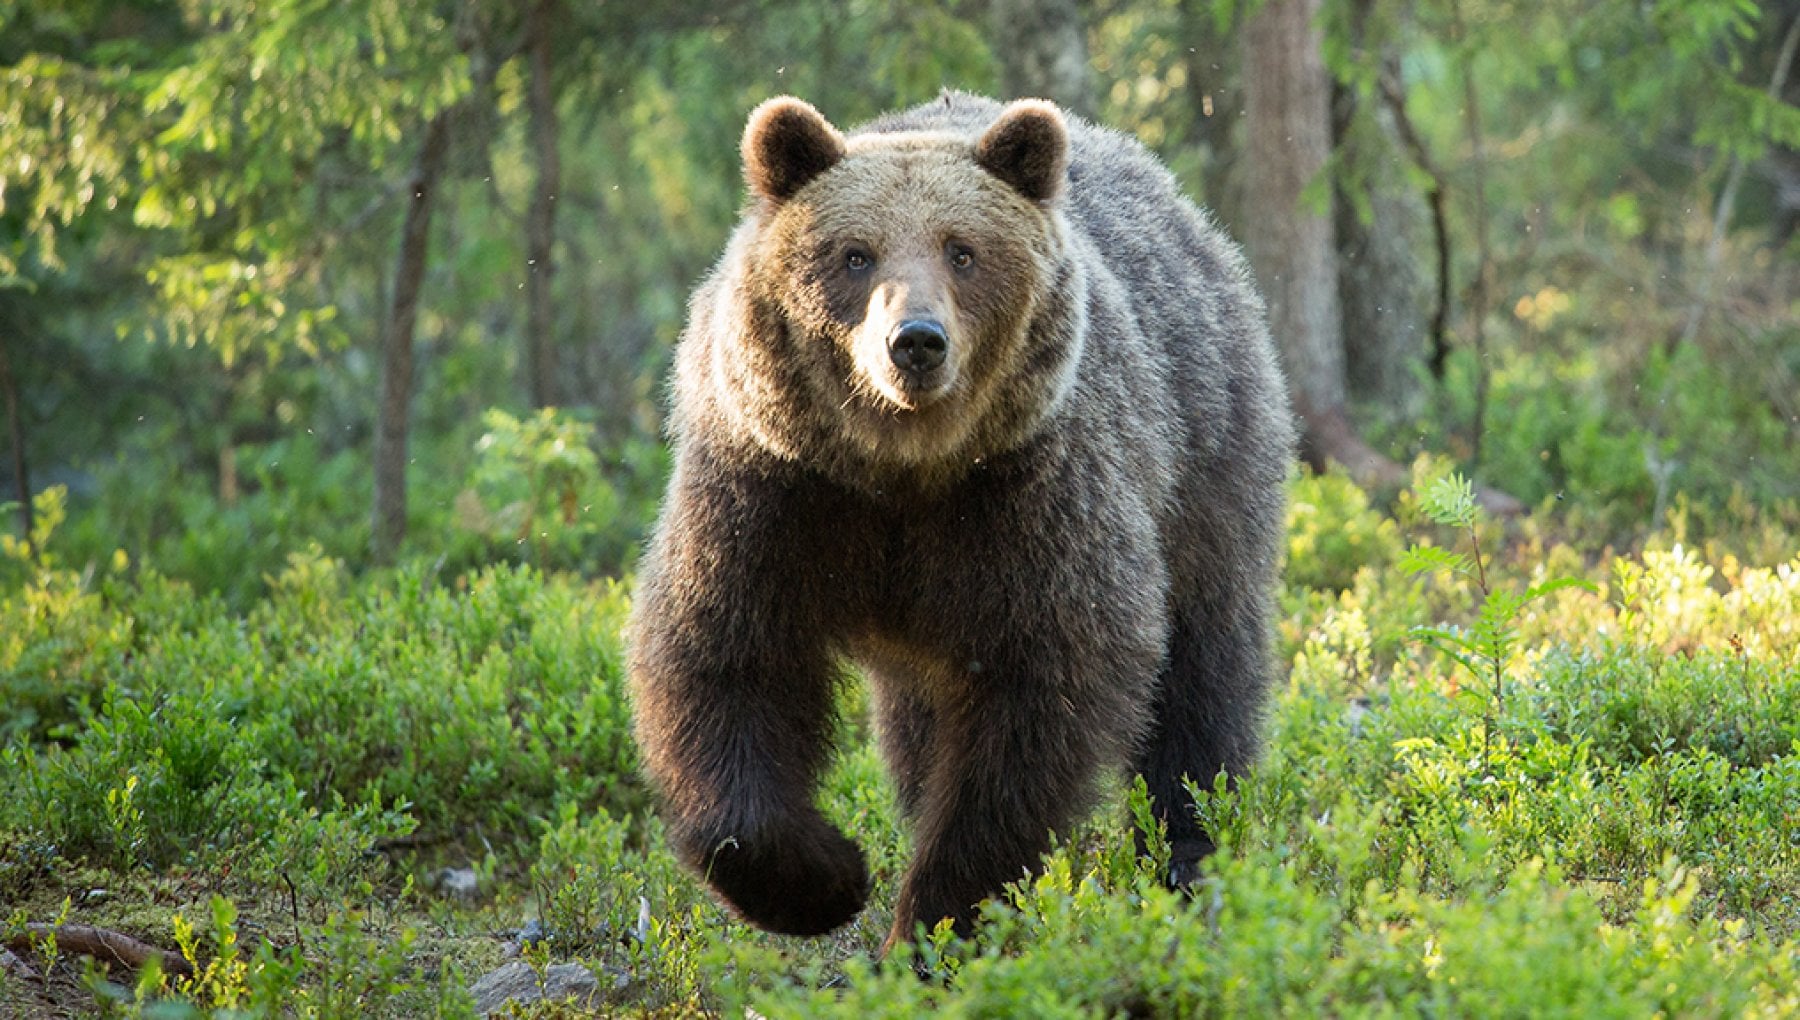 Abbattimento di otto orsi, Sat e sindaci d'accordo sul disegno di legge. E  i forestali: «Legalizzare lo spray»